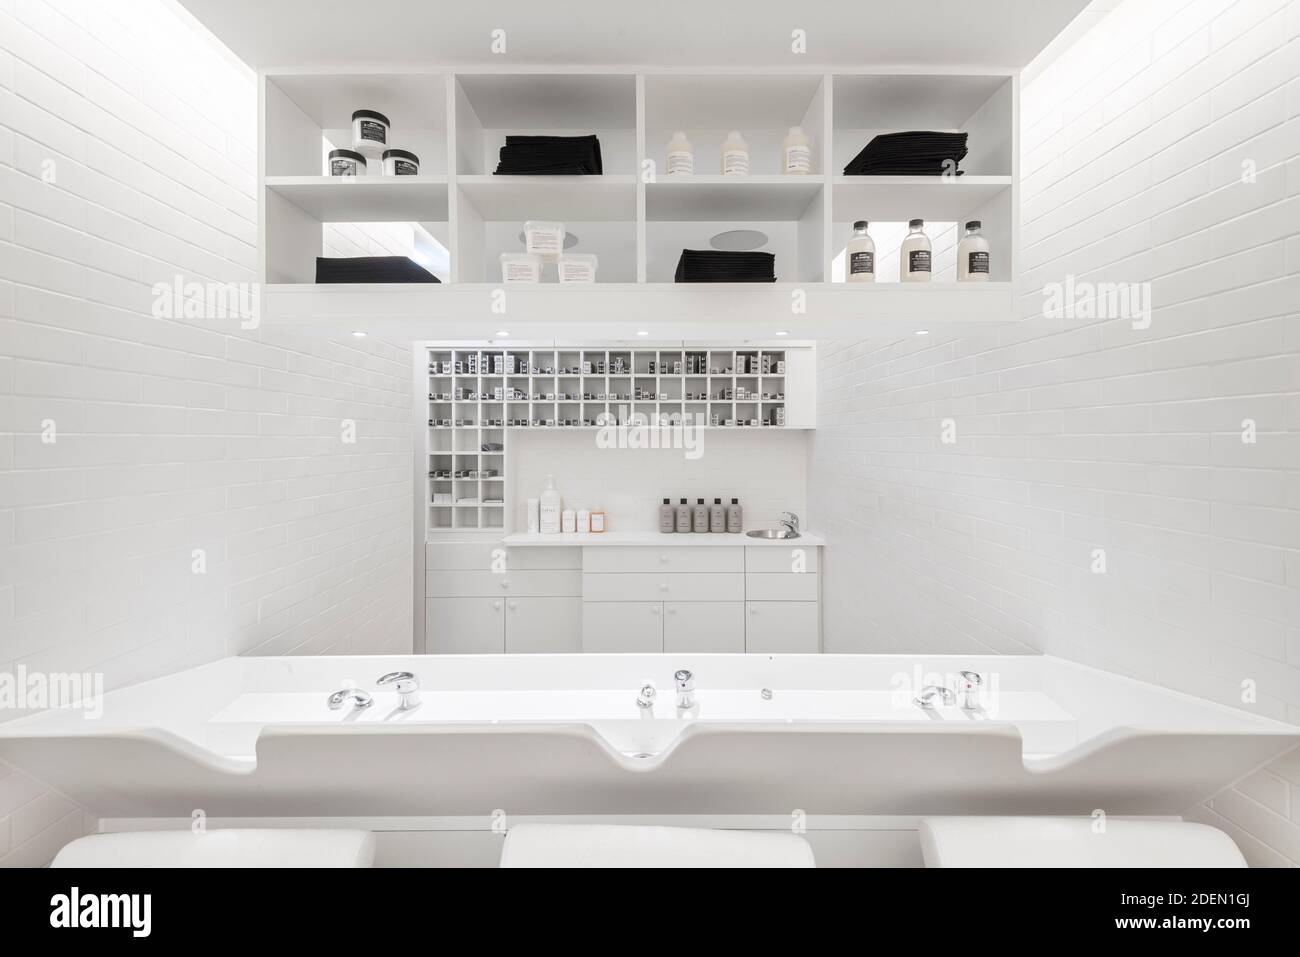 Laboratoire de couleurs et toilettes. Salon 64, Londres, Royaume-Uni. Architecte: Jak Studio, 2020. Banque D'Images